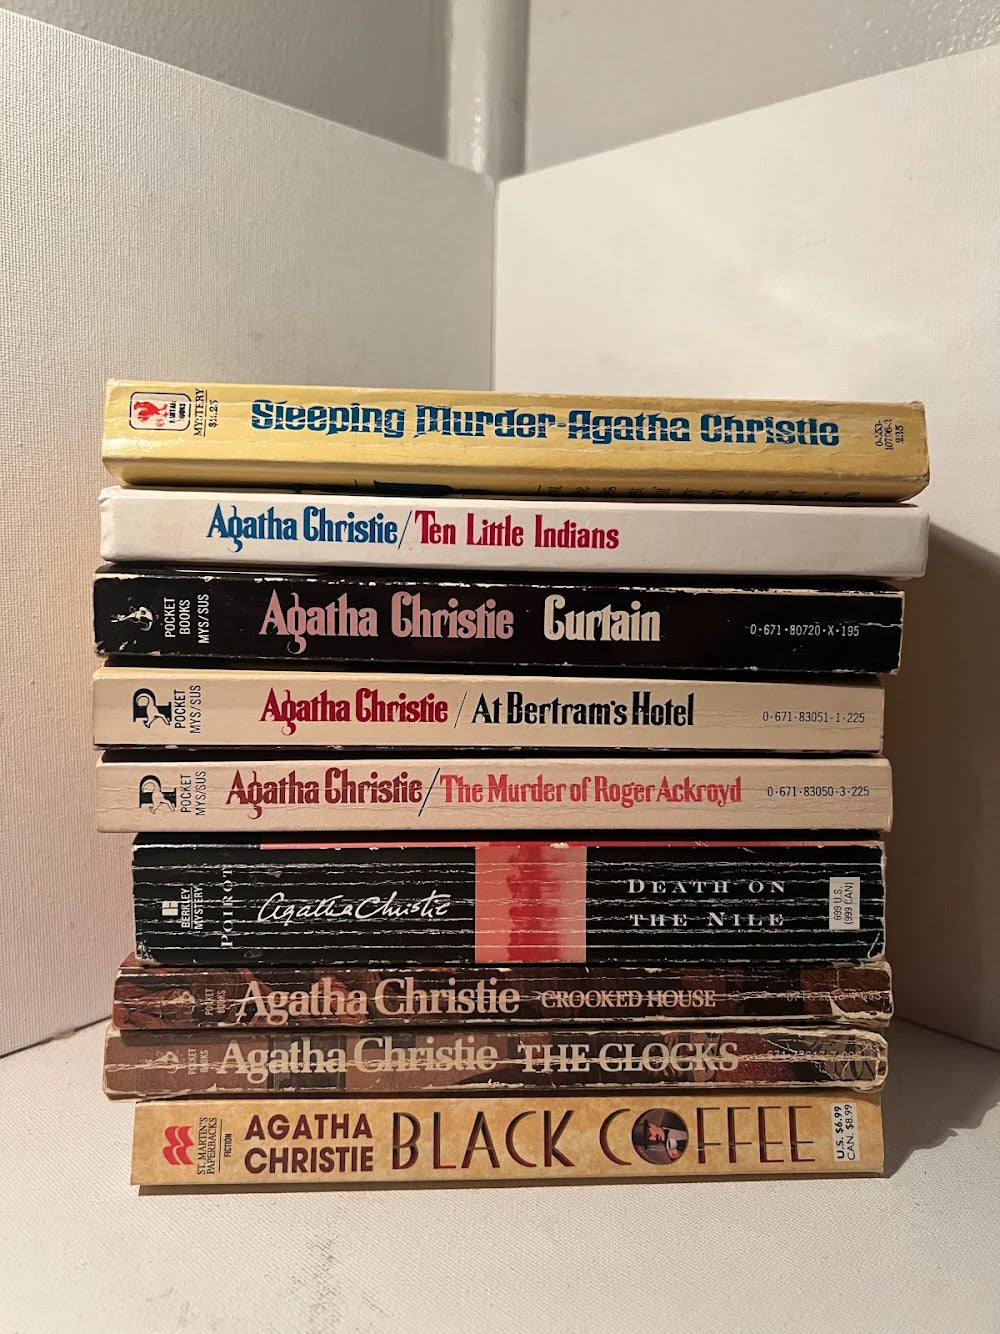 9 books by Agatha Christie